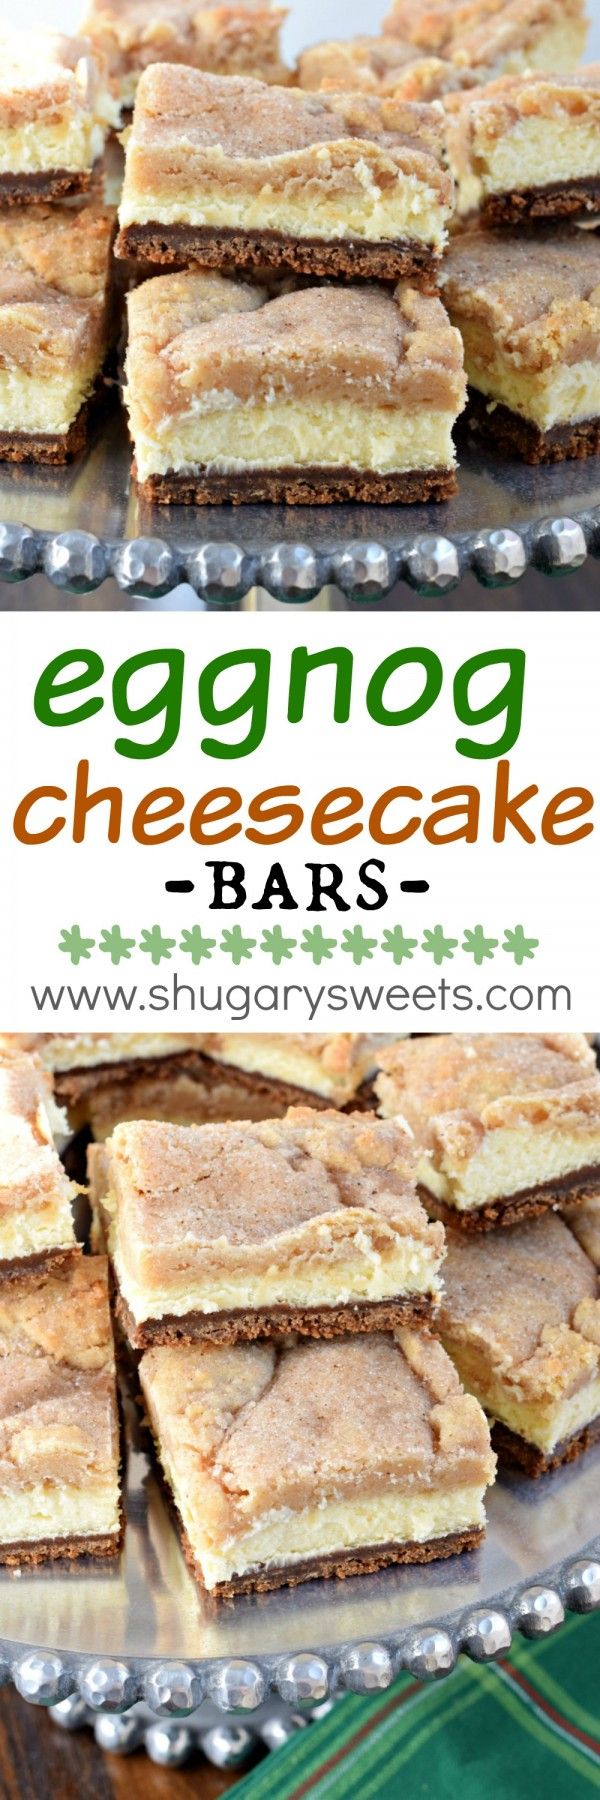 Eggnog Cheesecake Bars